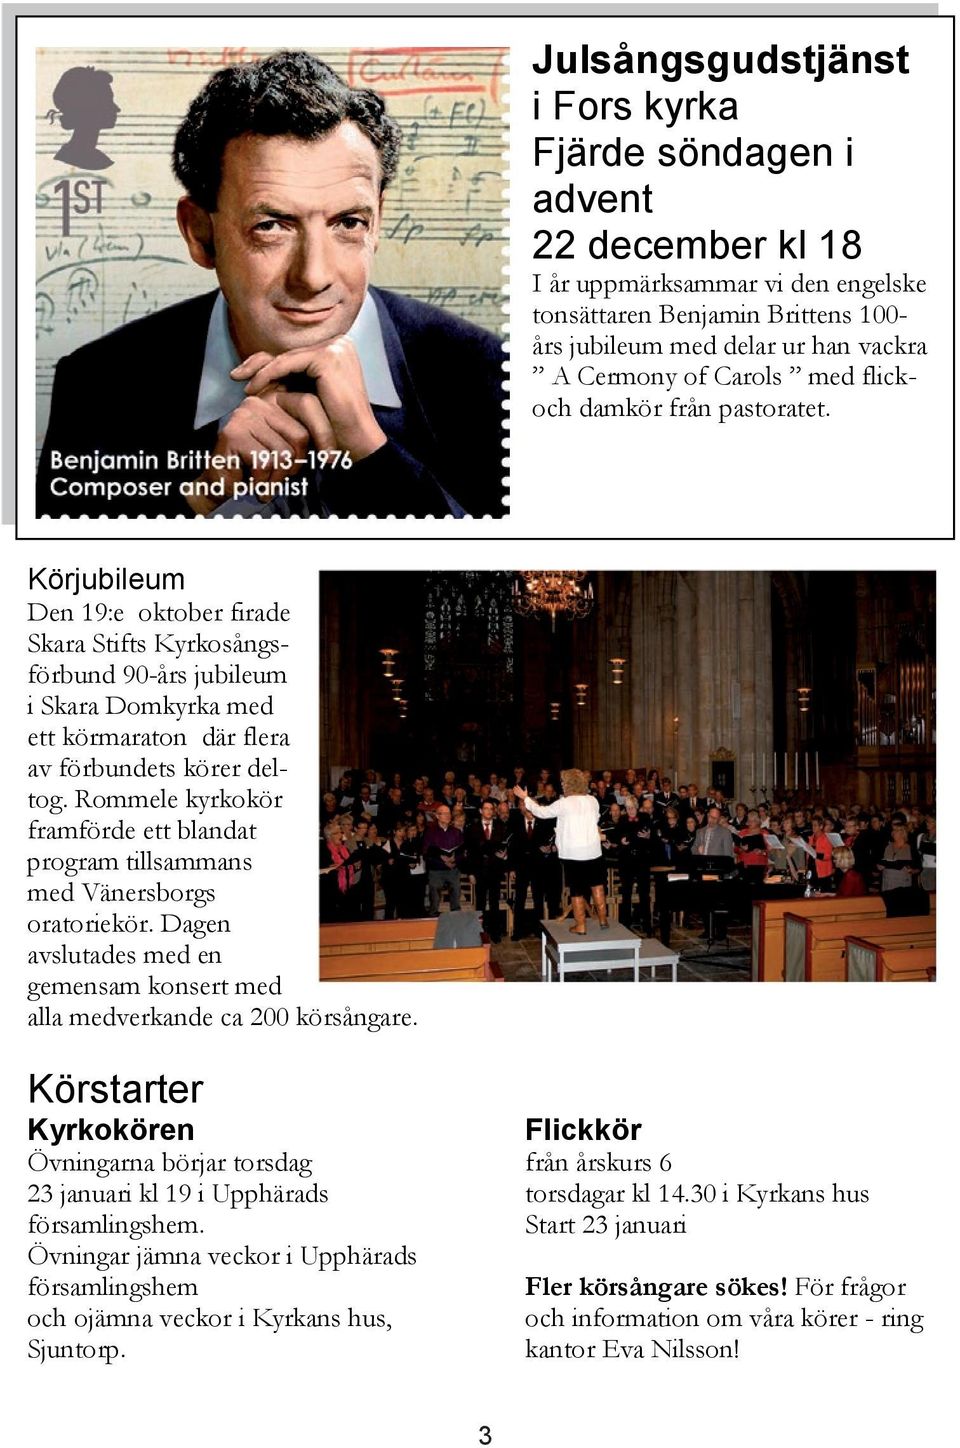 Rommele kyrkokör framförde ett blandat program tillsammans med Vänersborgs oratoriekör. Dagen avslutades med en gemensam konsert med alla medverkande ca 200 körsångare.